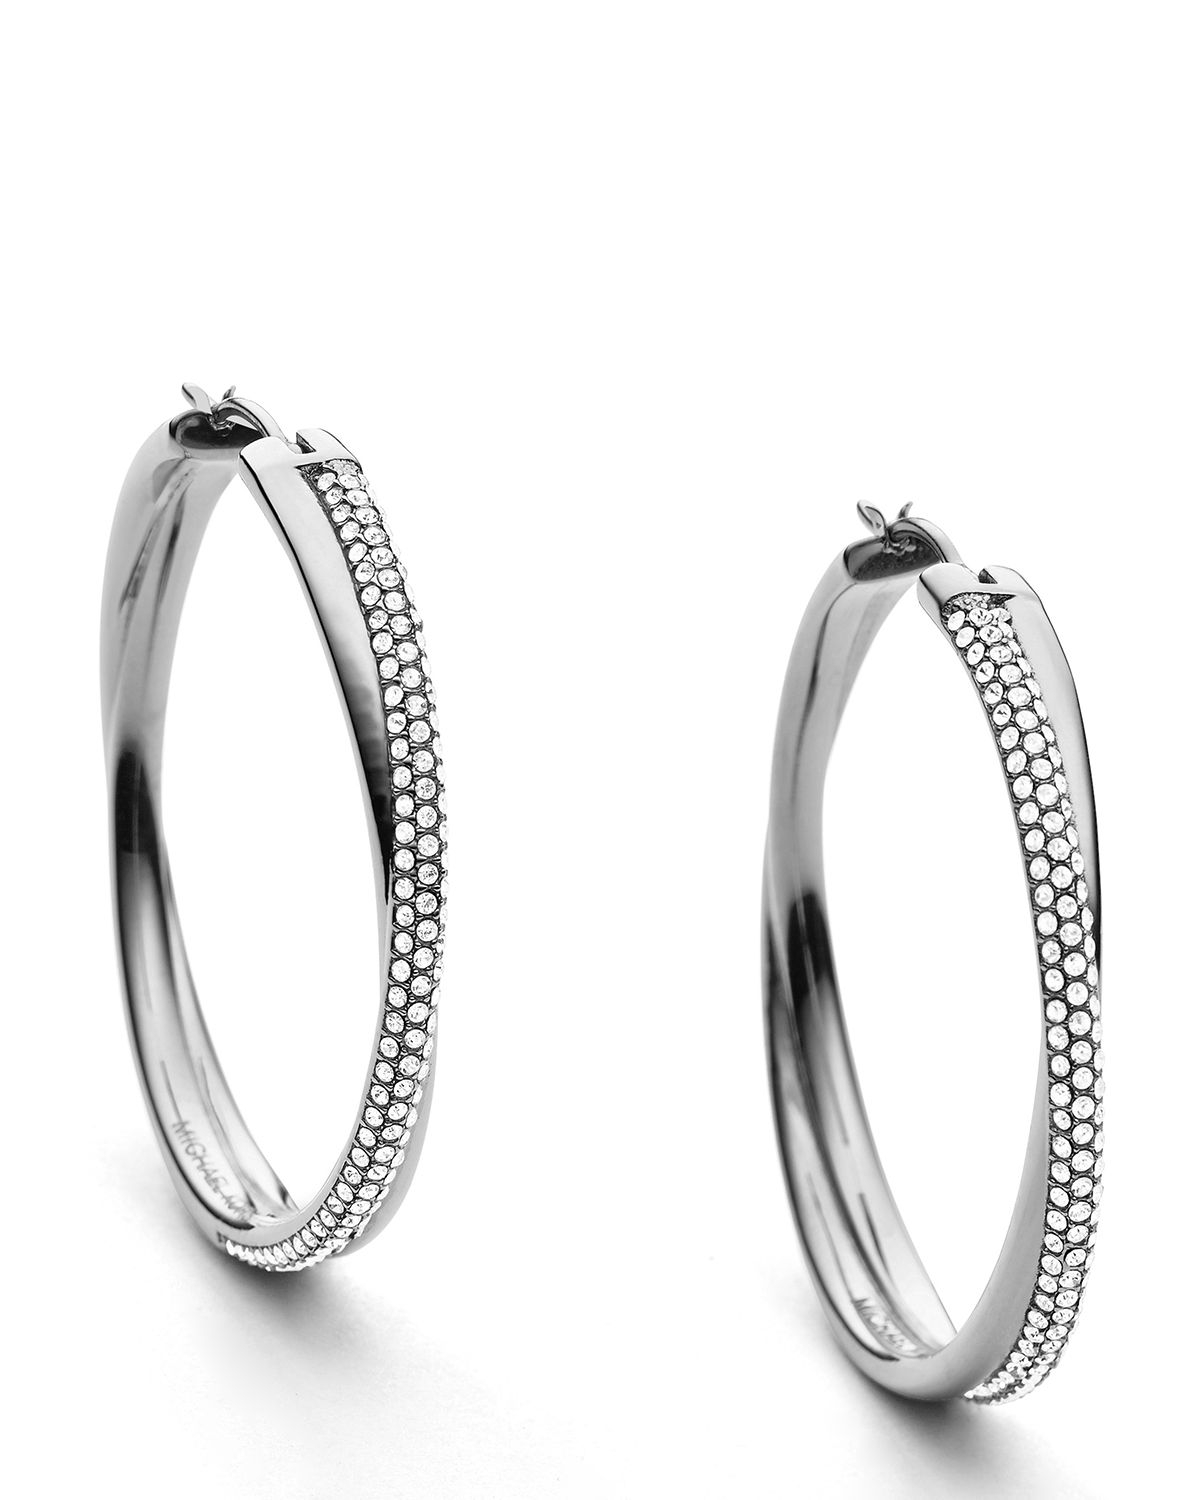 Michael Kors Crisscross Pave Hoop Earrings in Silver (Metallic) - Lyst